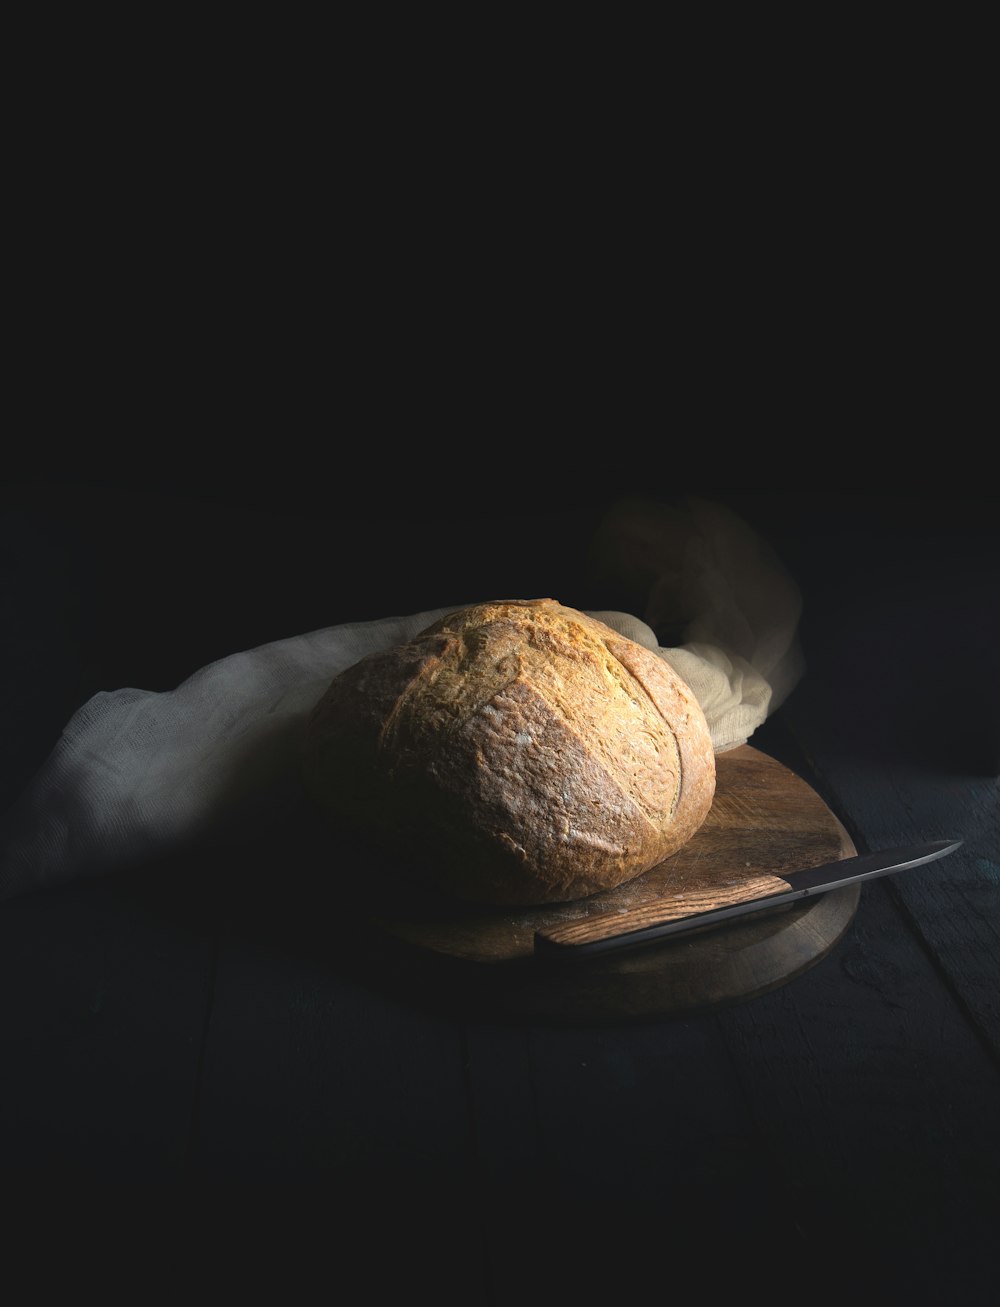 baked bread beside knife on wooden board